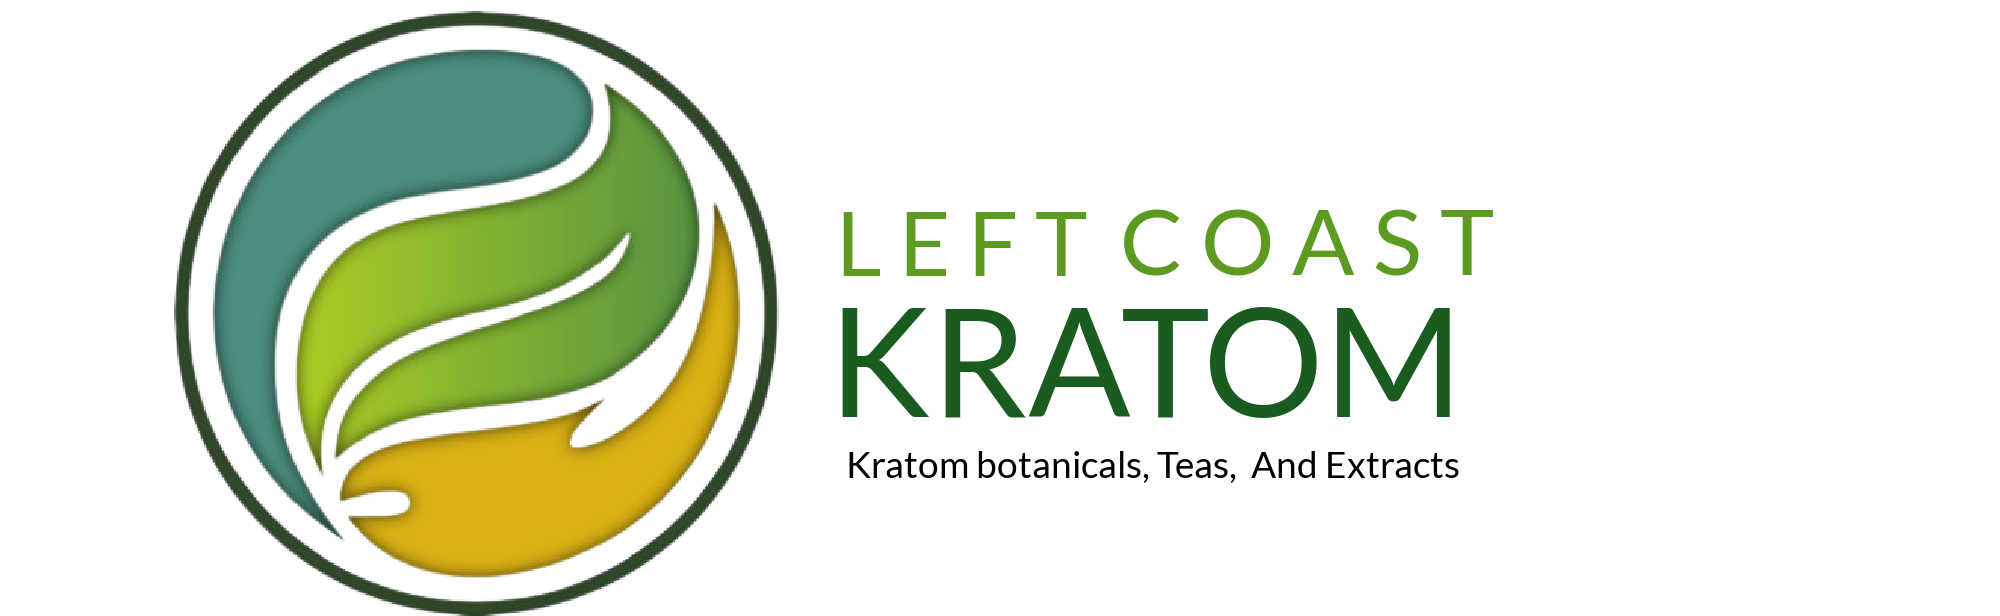 image of left coast kratom logo